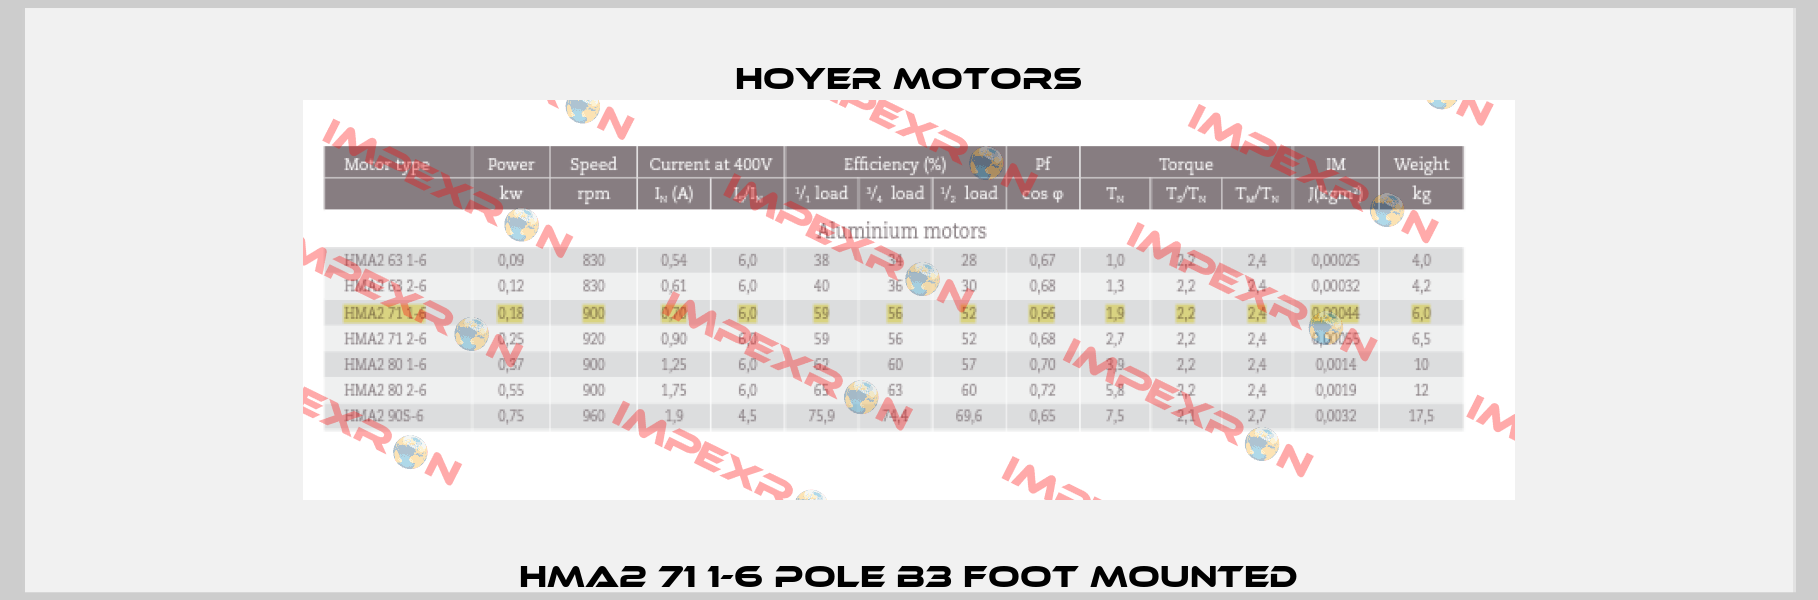 HMA2 71 1-6 pole B3 foot mounted Hoyer Motors